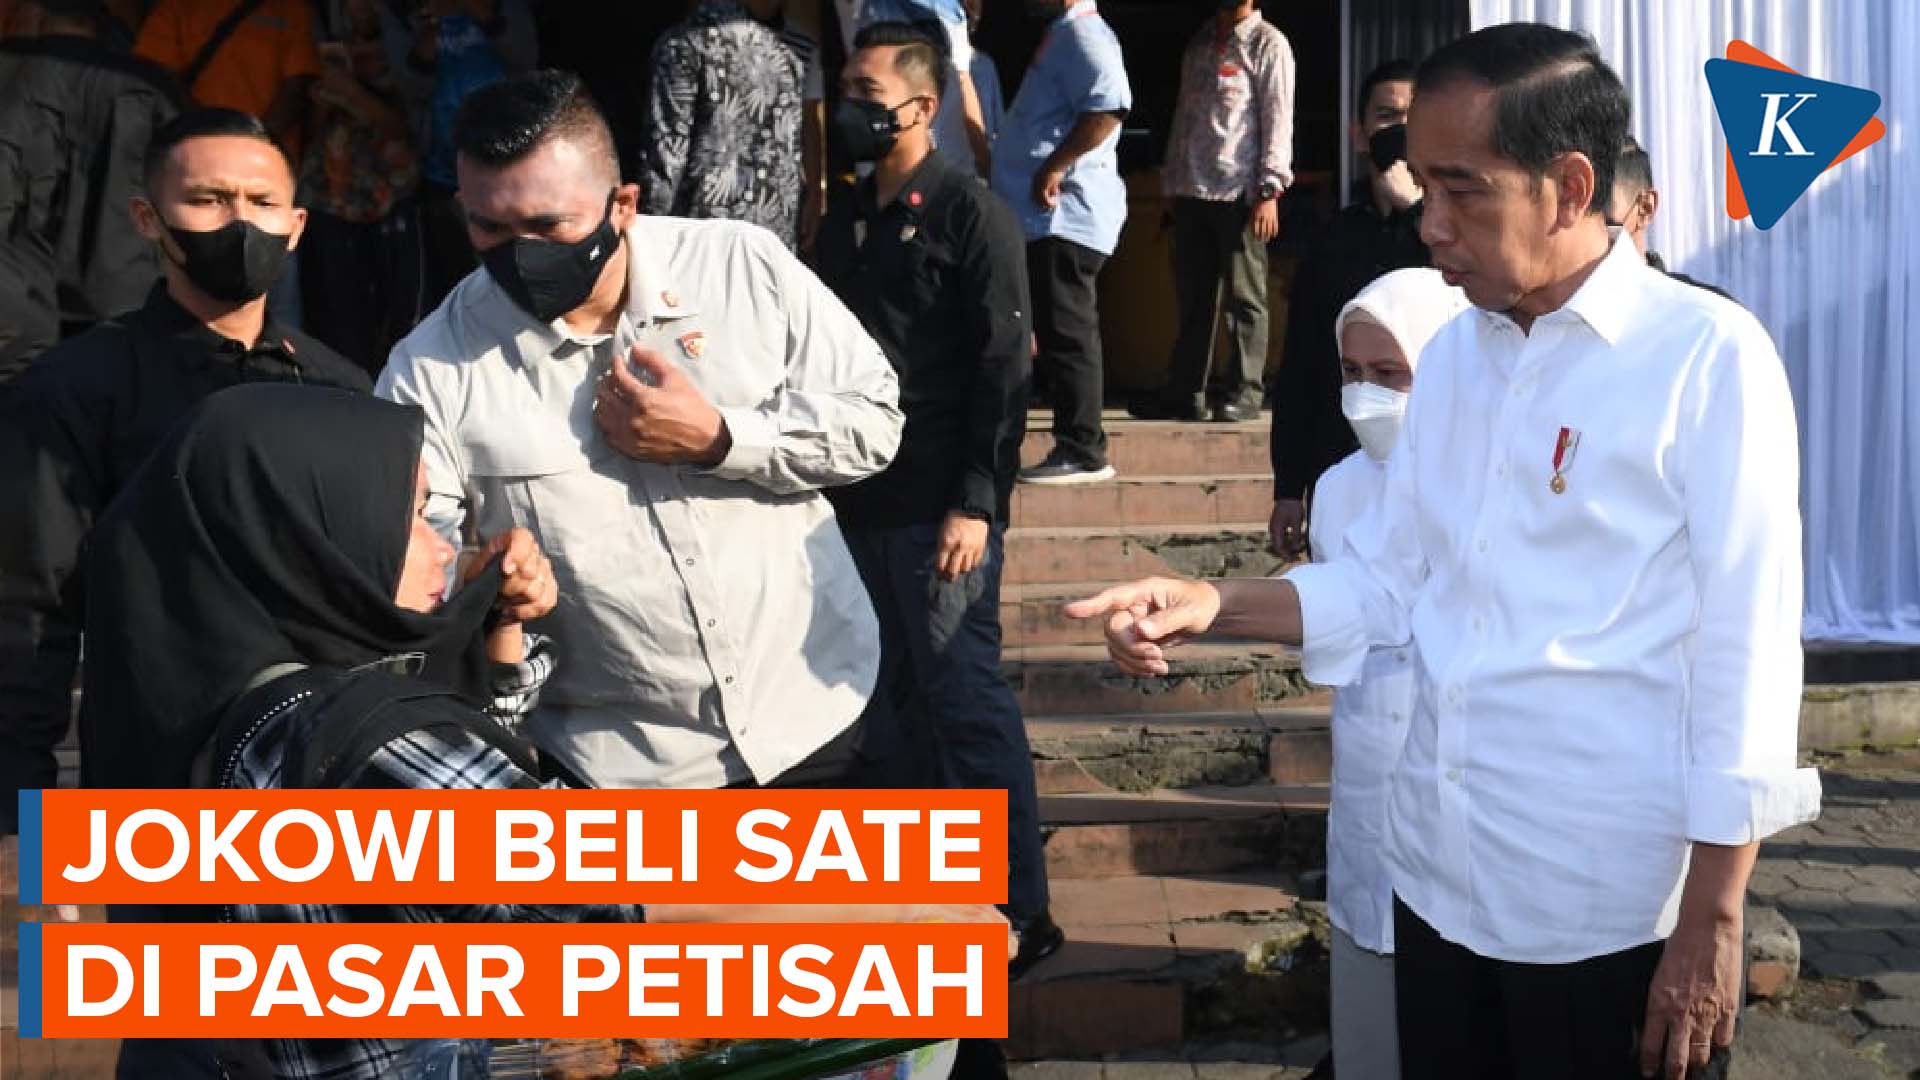 Satenya Dibeli Jokowi, Pedagang asal Medan Ingin Diundang ke Istana